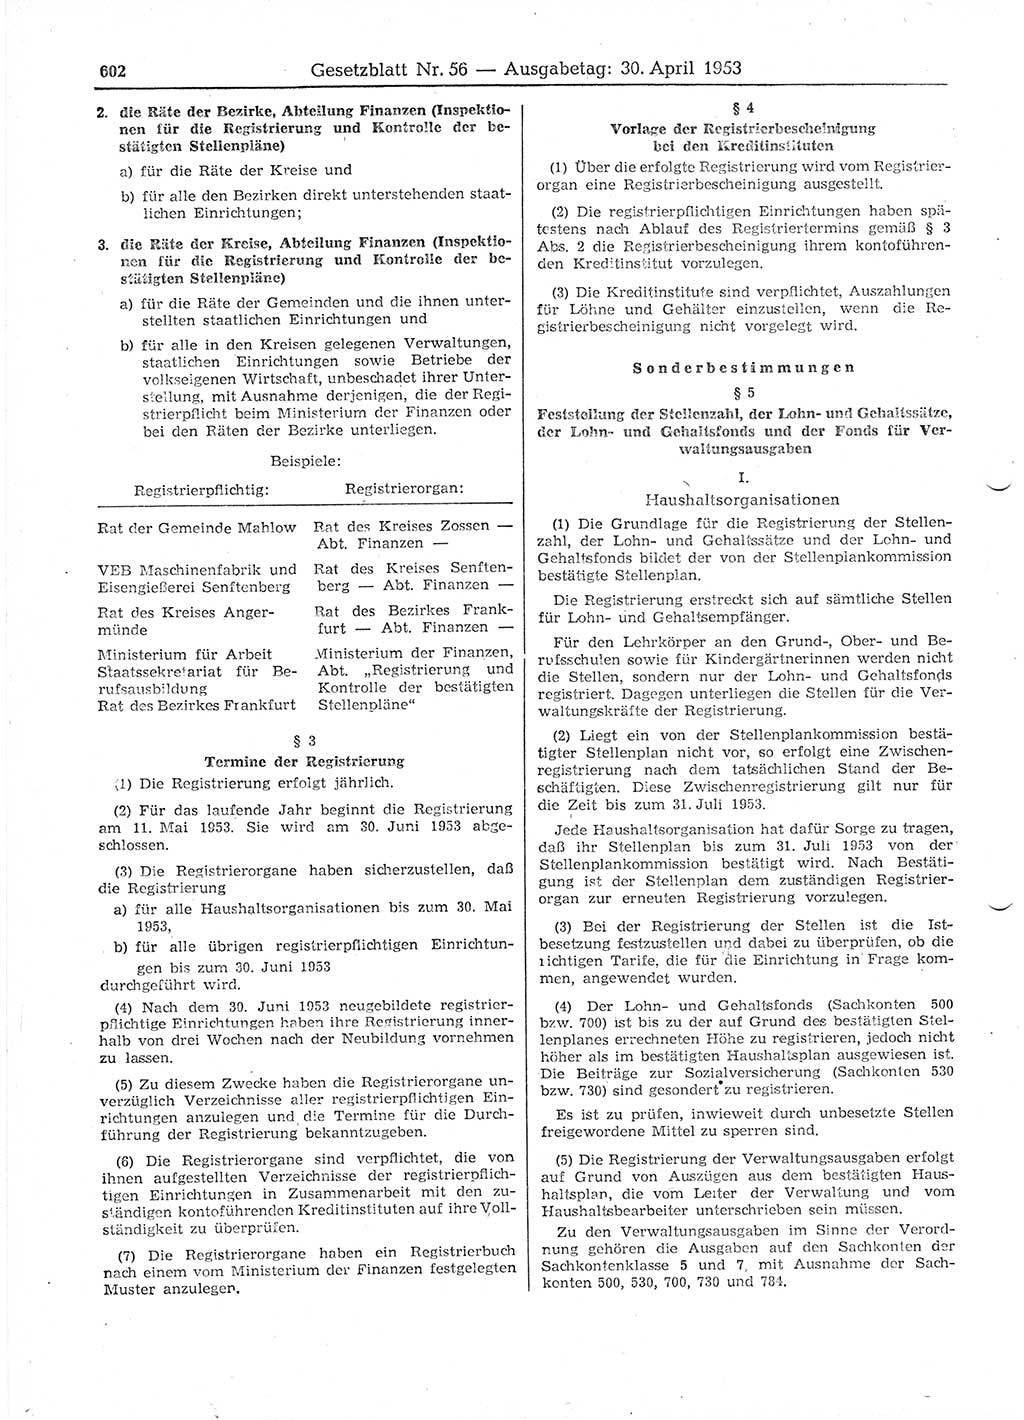 Gesetzblatt (GBl.) der Deutschen Demokratischen Republik (DDR) 1953, Seite 602 (GBl. DDR 1953, S. 602)